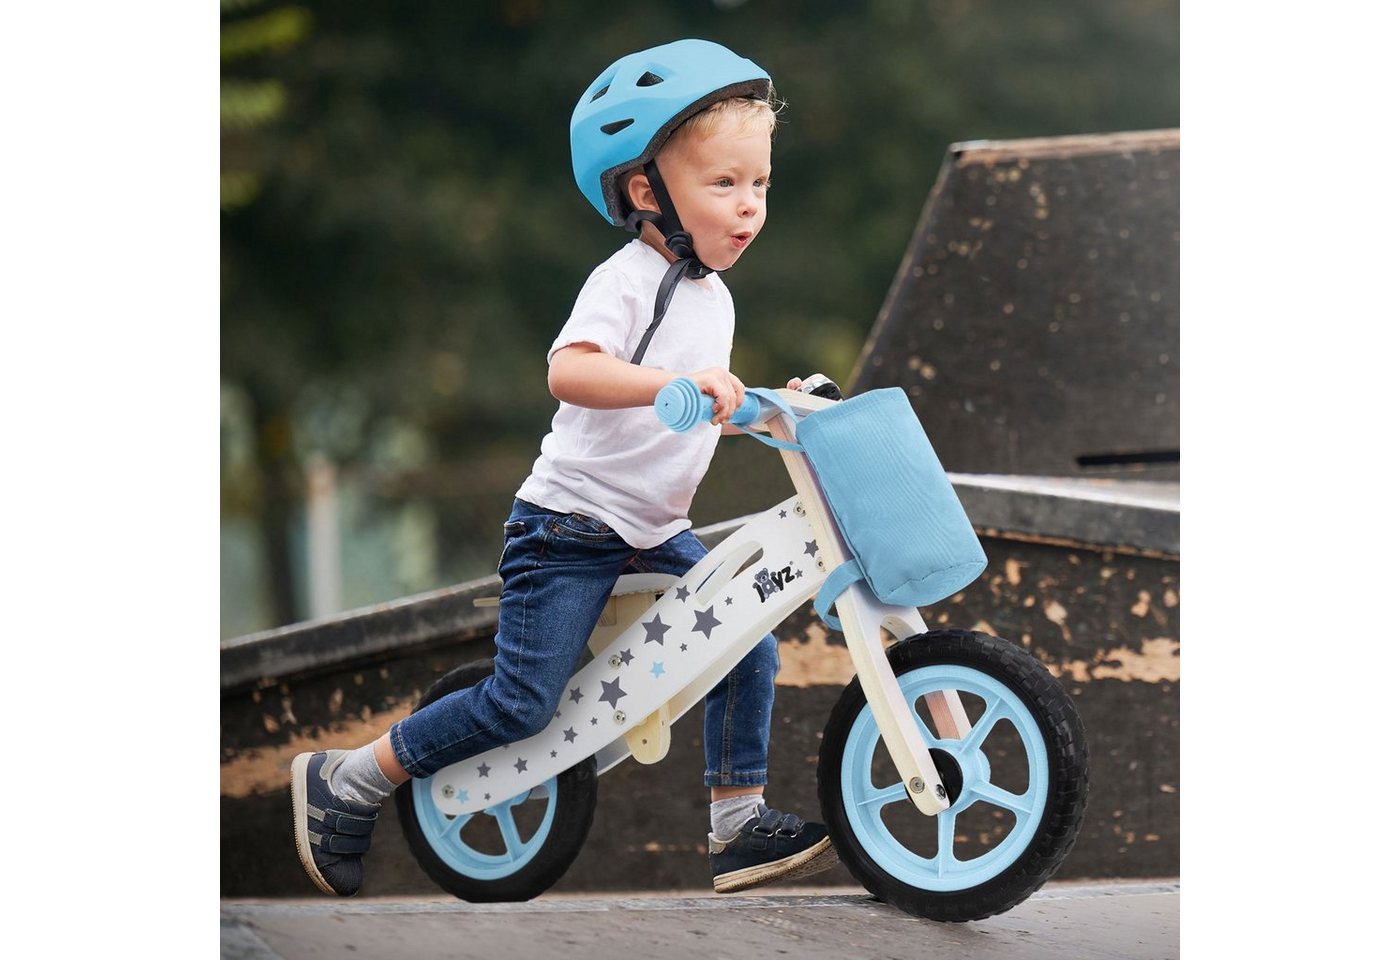 Joyz Laufrad Holzlaufrad mit verstellbarer Sitz und Stoffbeutel Klingel & Tragegrif 11 Zoll, Kinderfahrrad Blau für Kinder ab 2 bis 5 Jahren Lauflernrad 85x35x54cm von Joyz